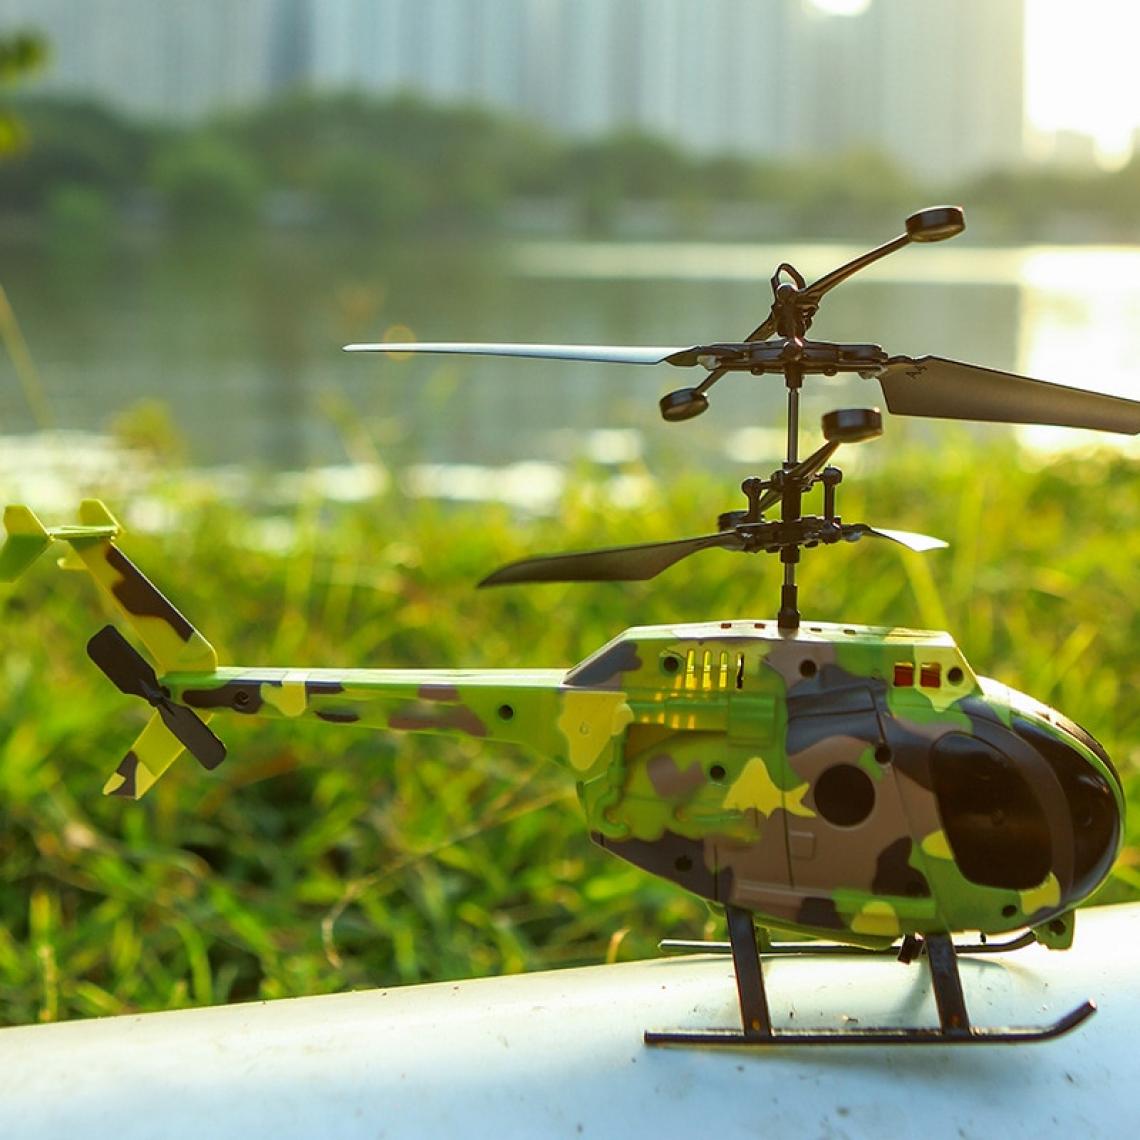 Universal - Hélicoptère télécommandé, détecteur infrarouge, jouet de sauvetage, suspension amusante, suspension cool, jouet d'avion, cadeau d'anniversaire, jouet.(Vert) - Drone